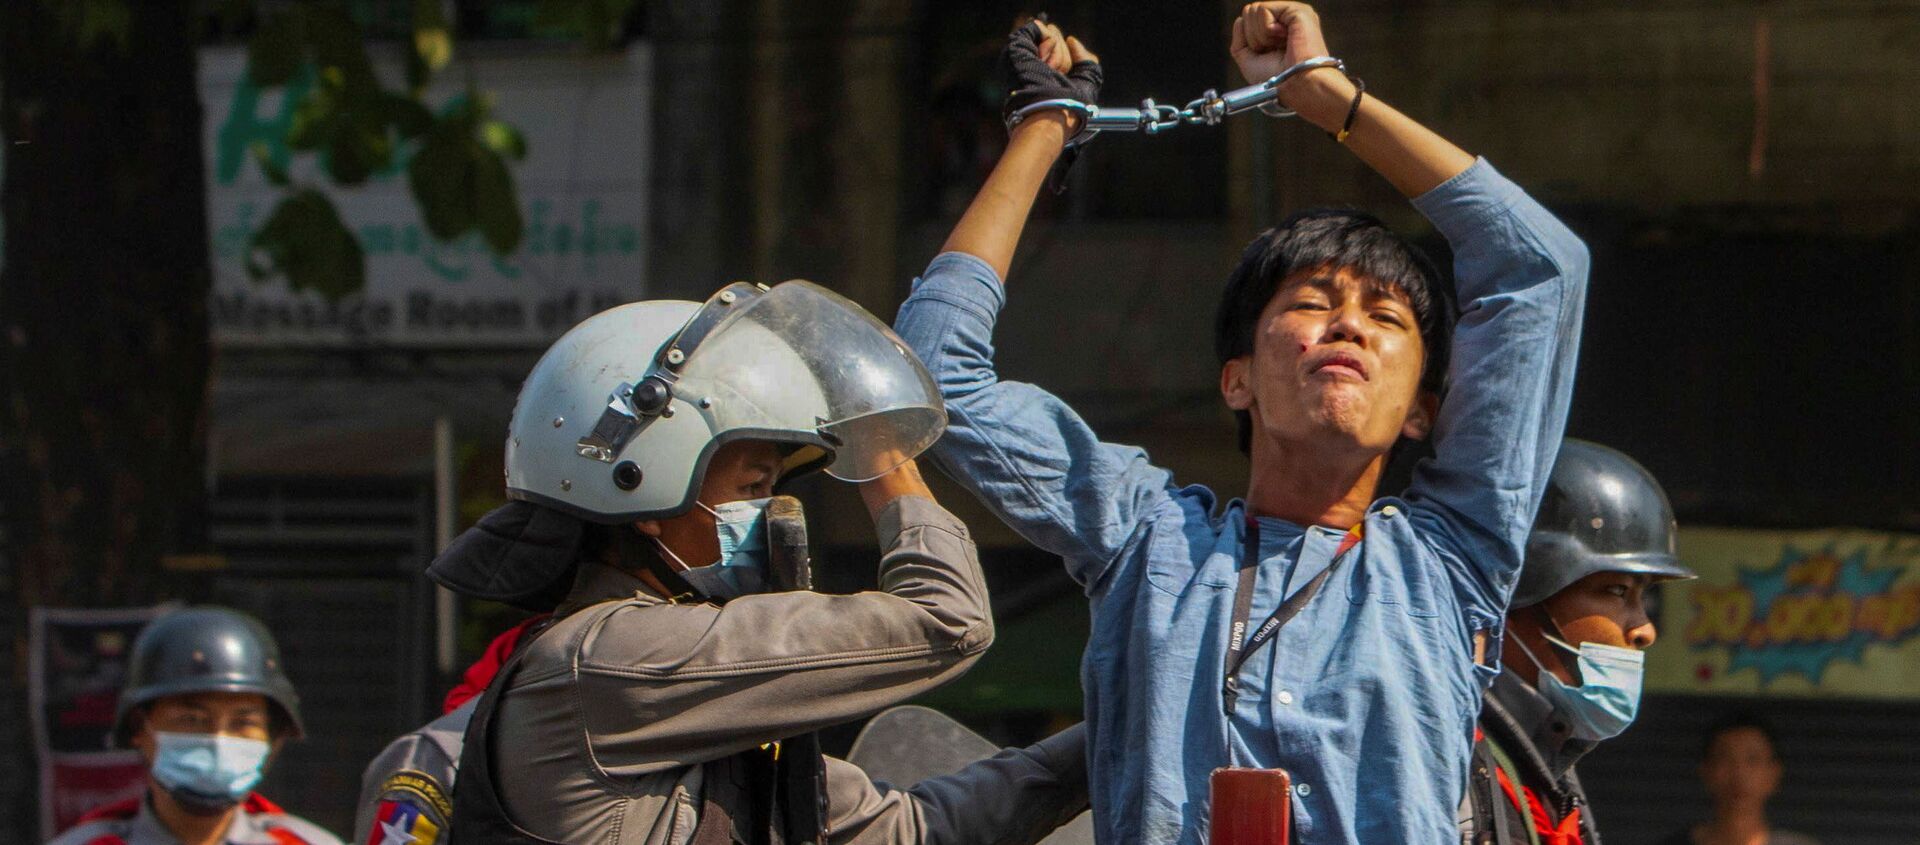 Một người biểu tình bị cảnh sát bắt giữ trong cuộc xuống đường chống lại cuộc đảo chính quân sự ở Yangon, Myanmar - Sputnik Việt Nam, 1920, 11.03.2021